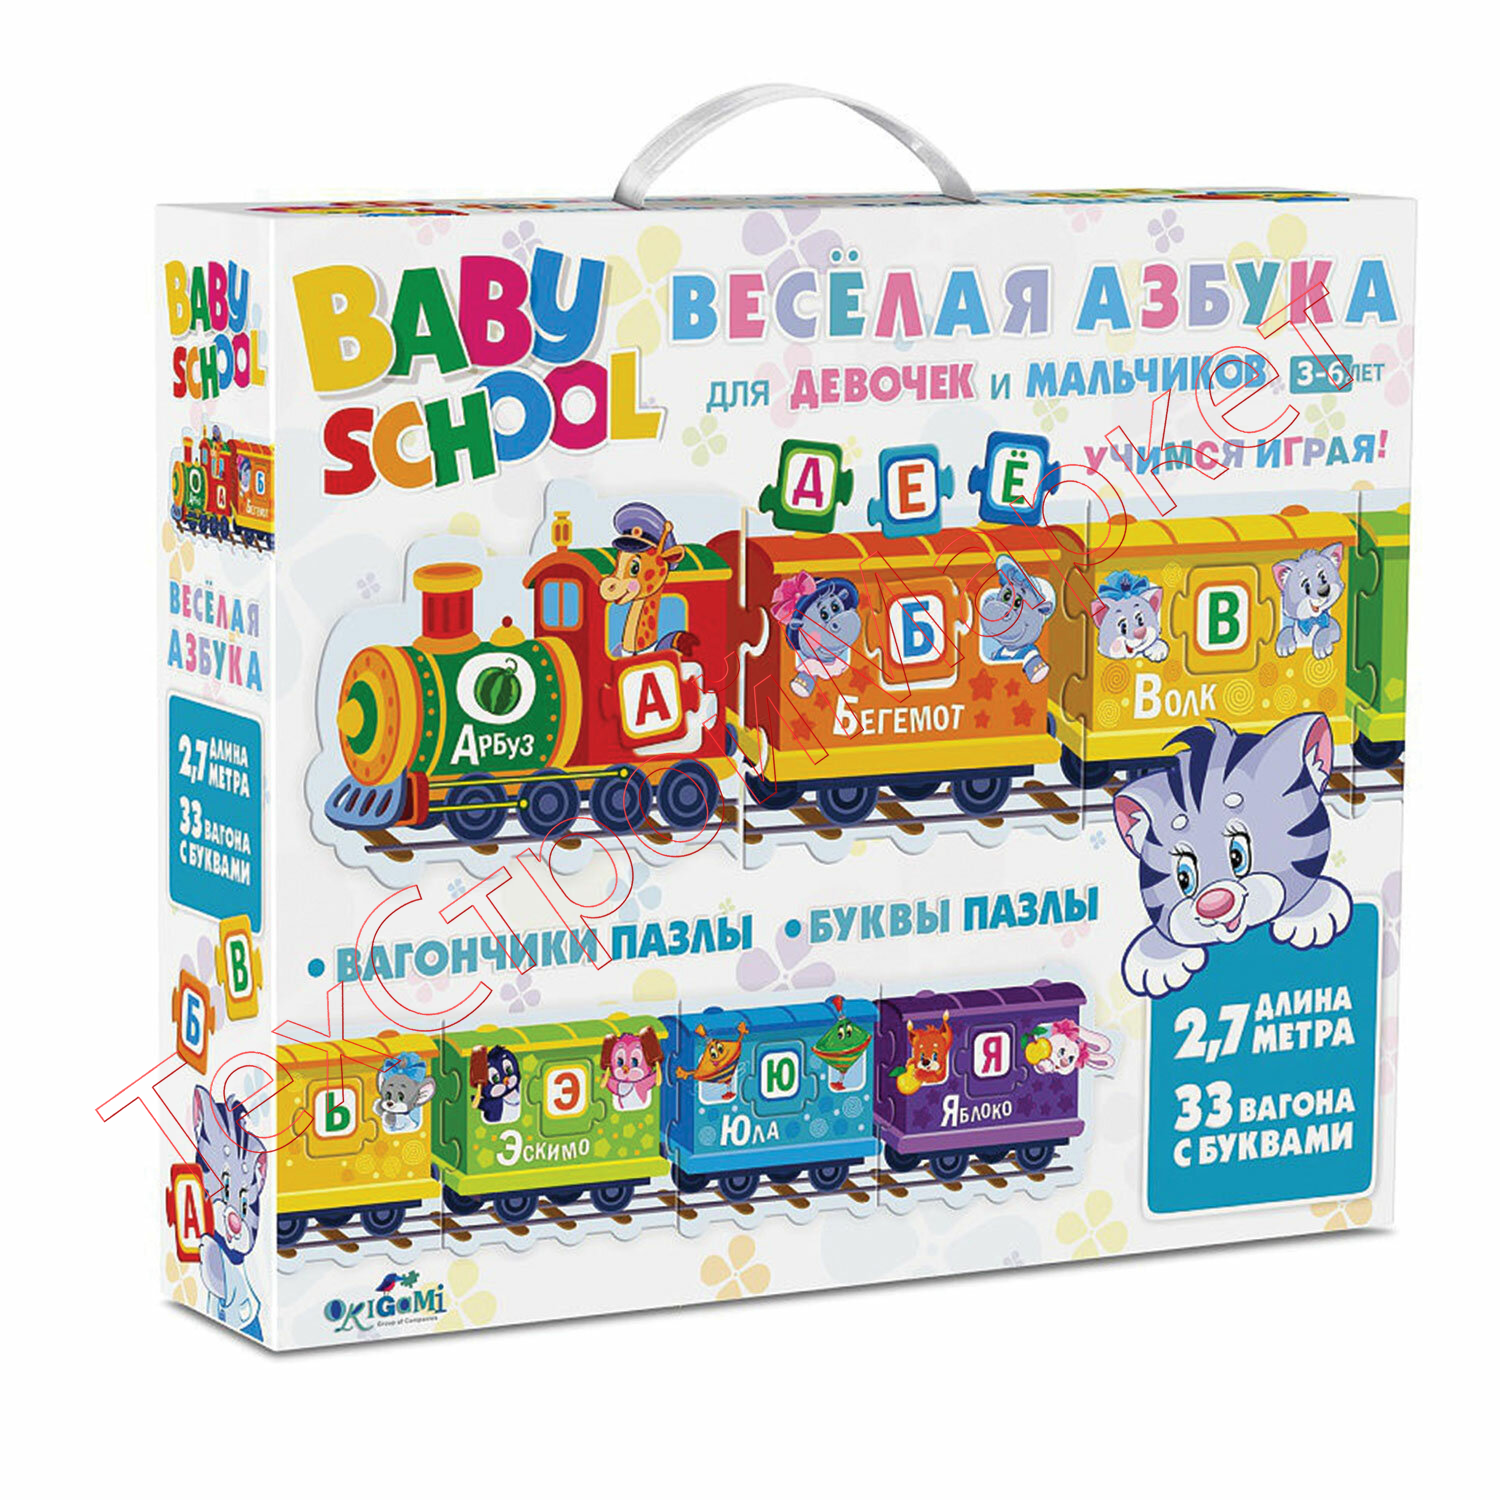 Набор обучающий BABY SCHOOL "Веселая азбука", 33 вагона с буквами, ORIGAMI, 03922